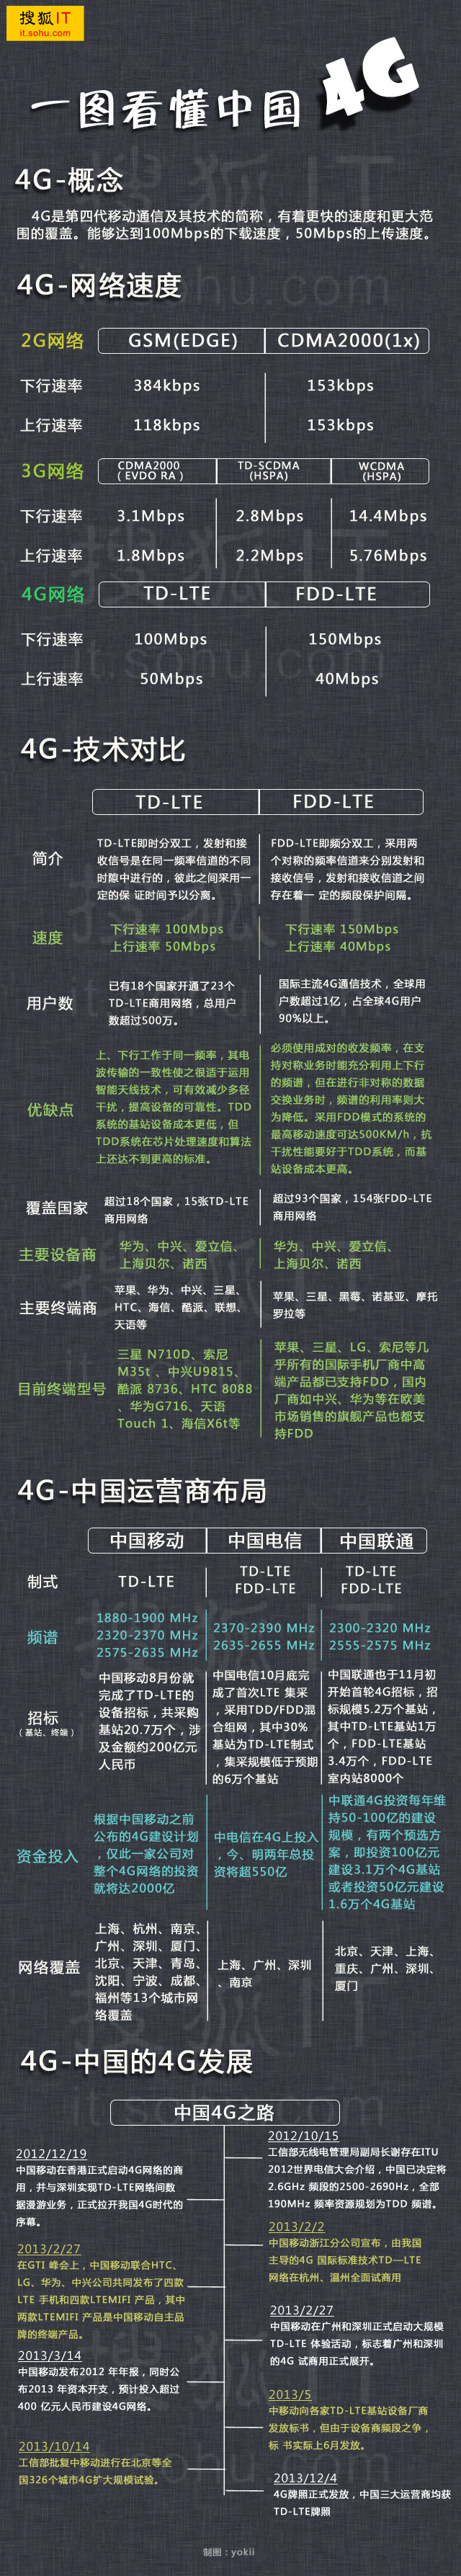 一圖讓你看懂中國4G  三聯